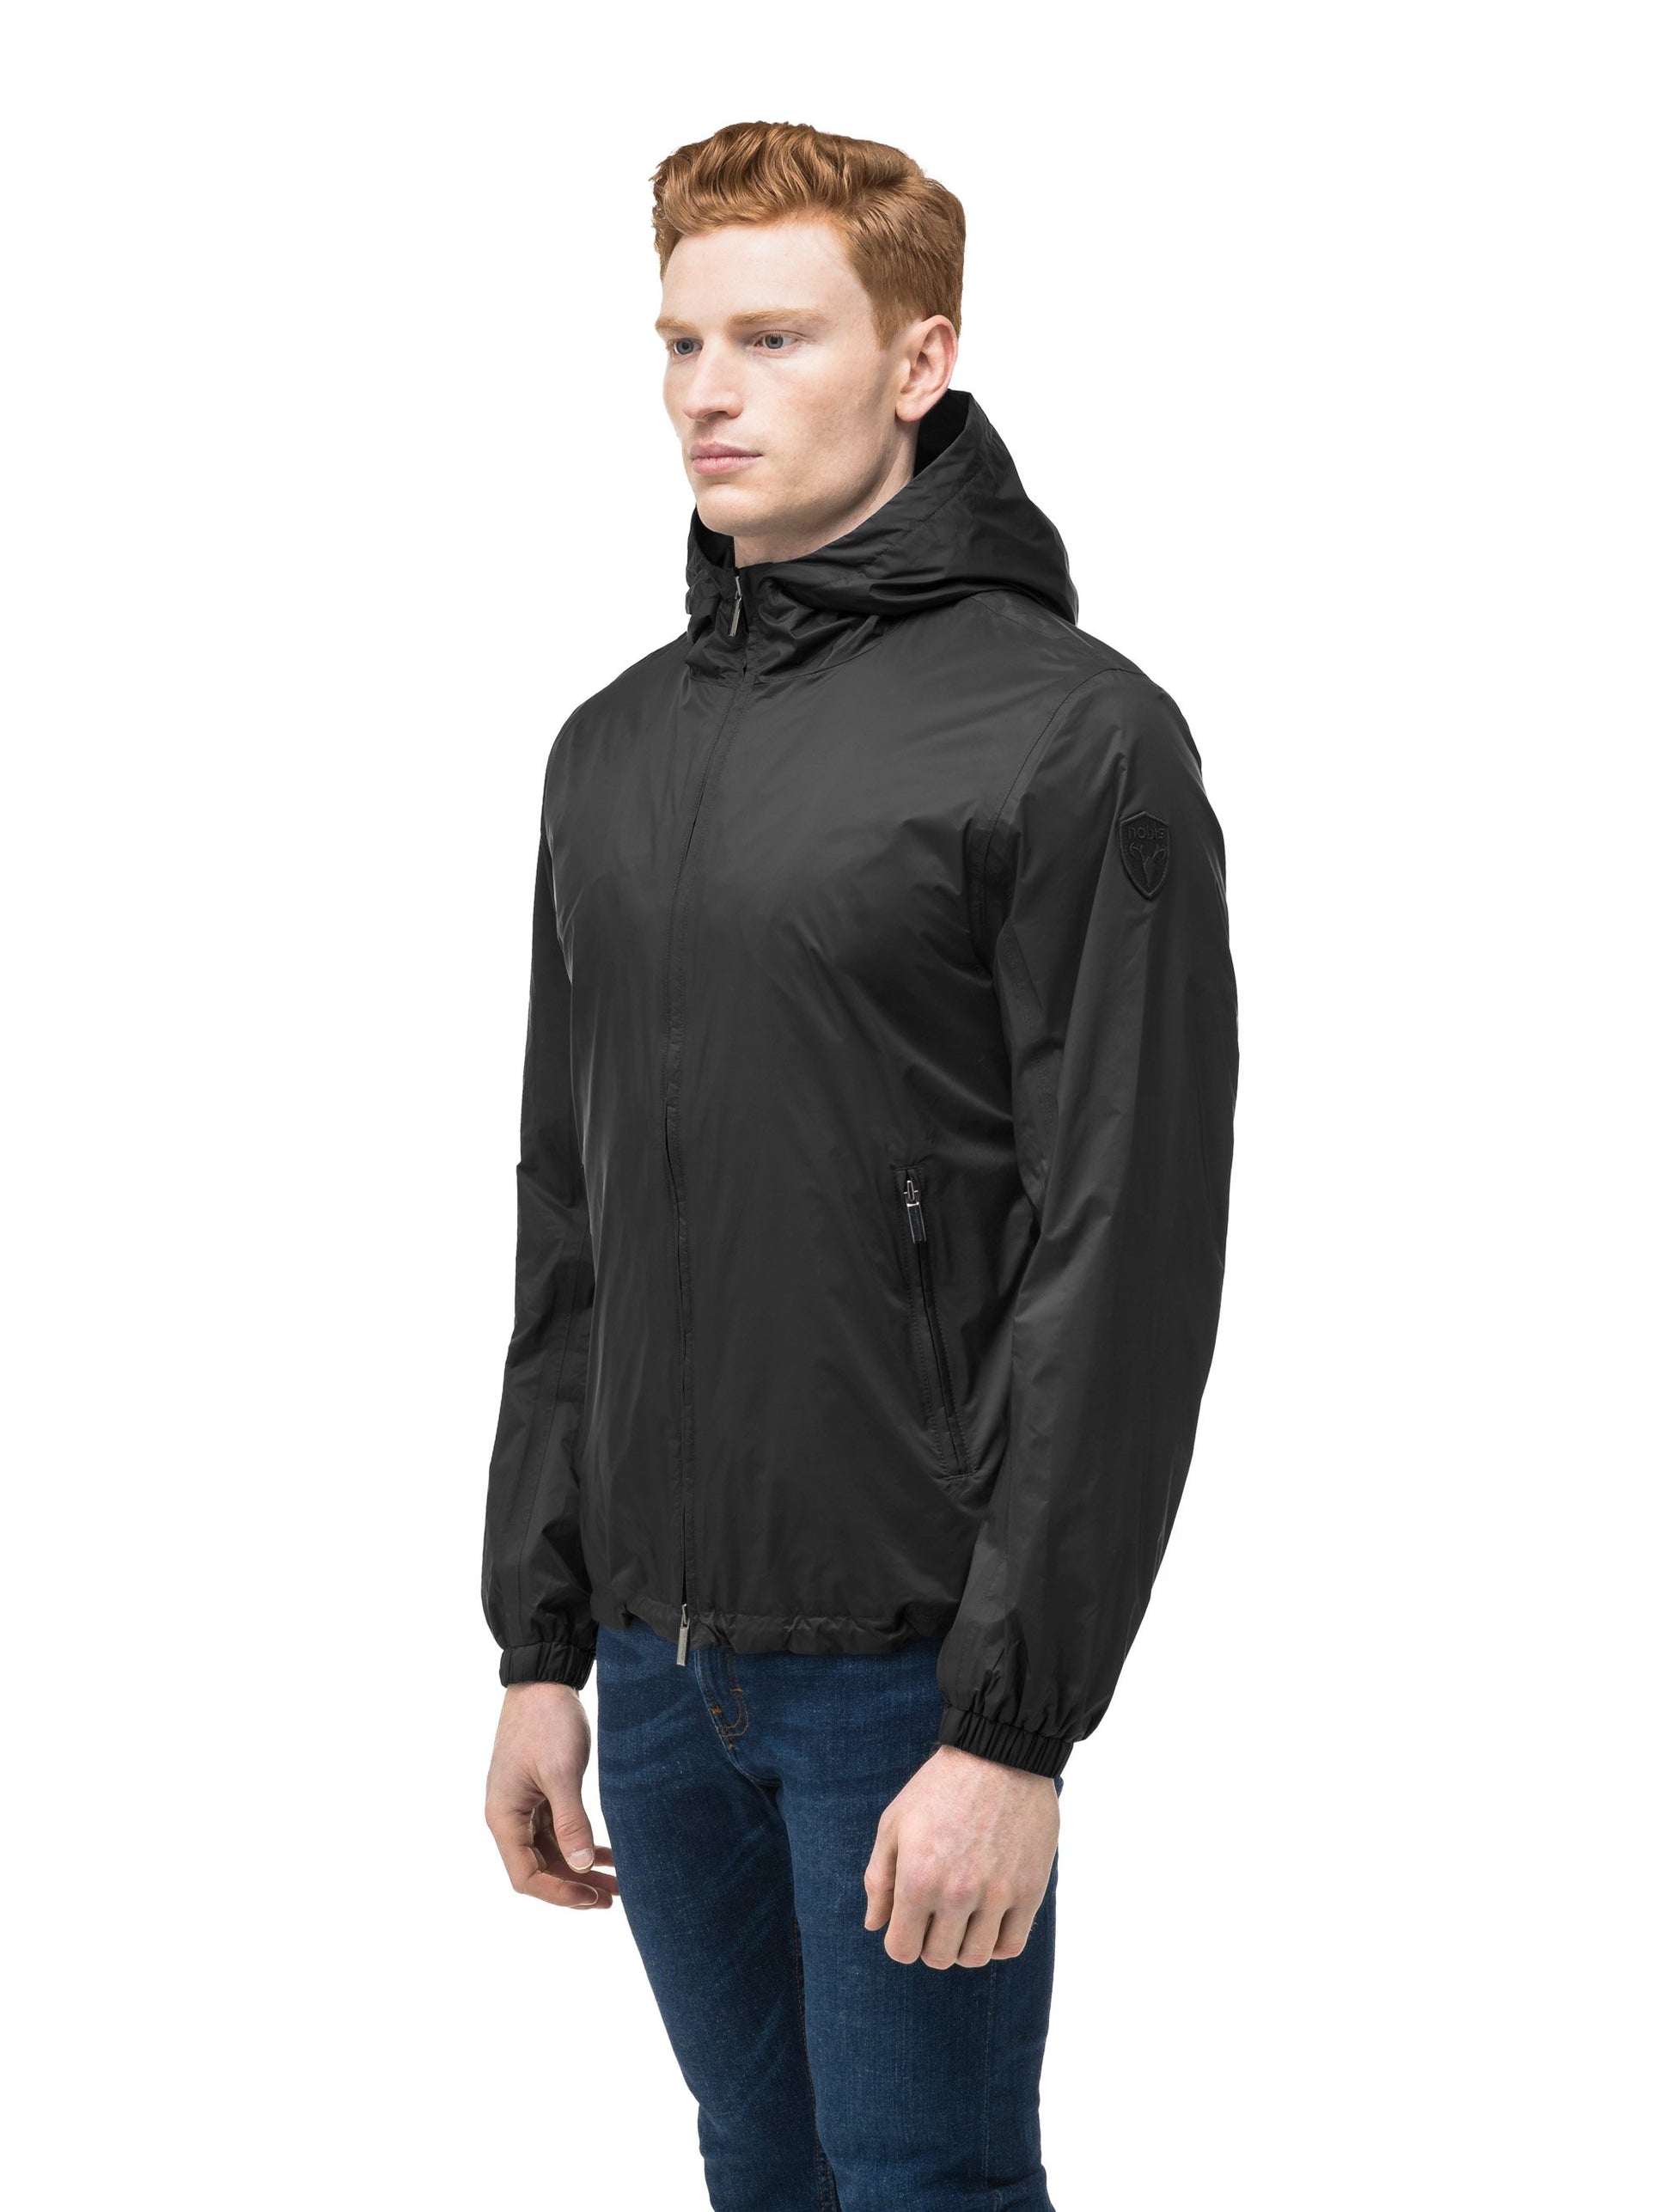 Men's waist length zip up hooded windproof jacket in Black